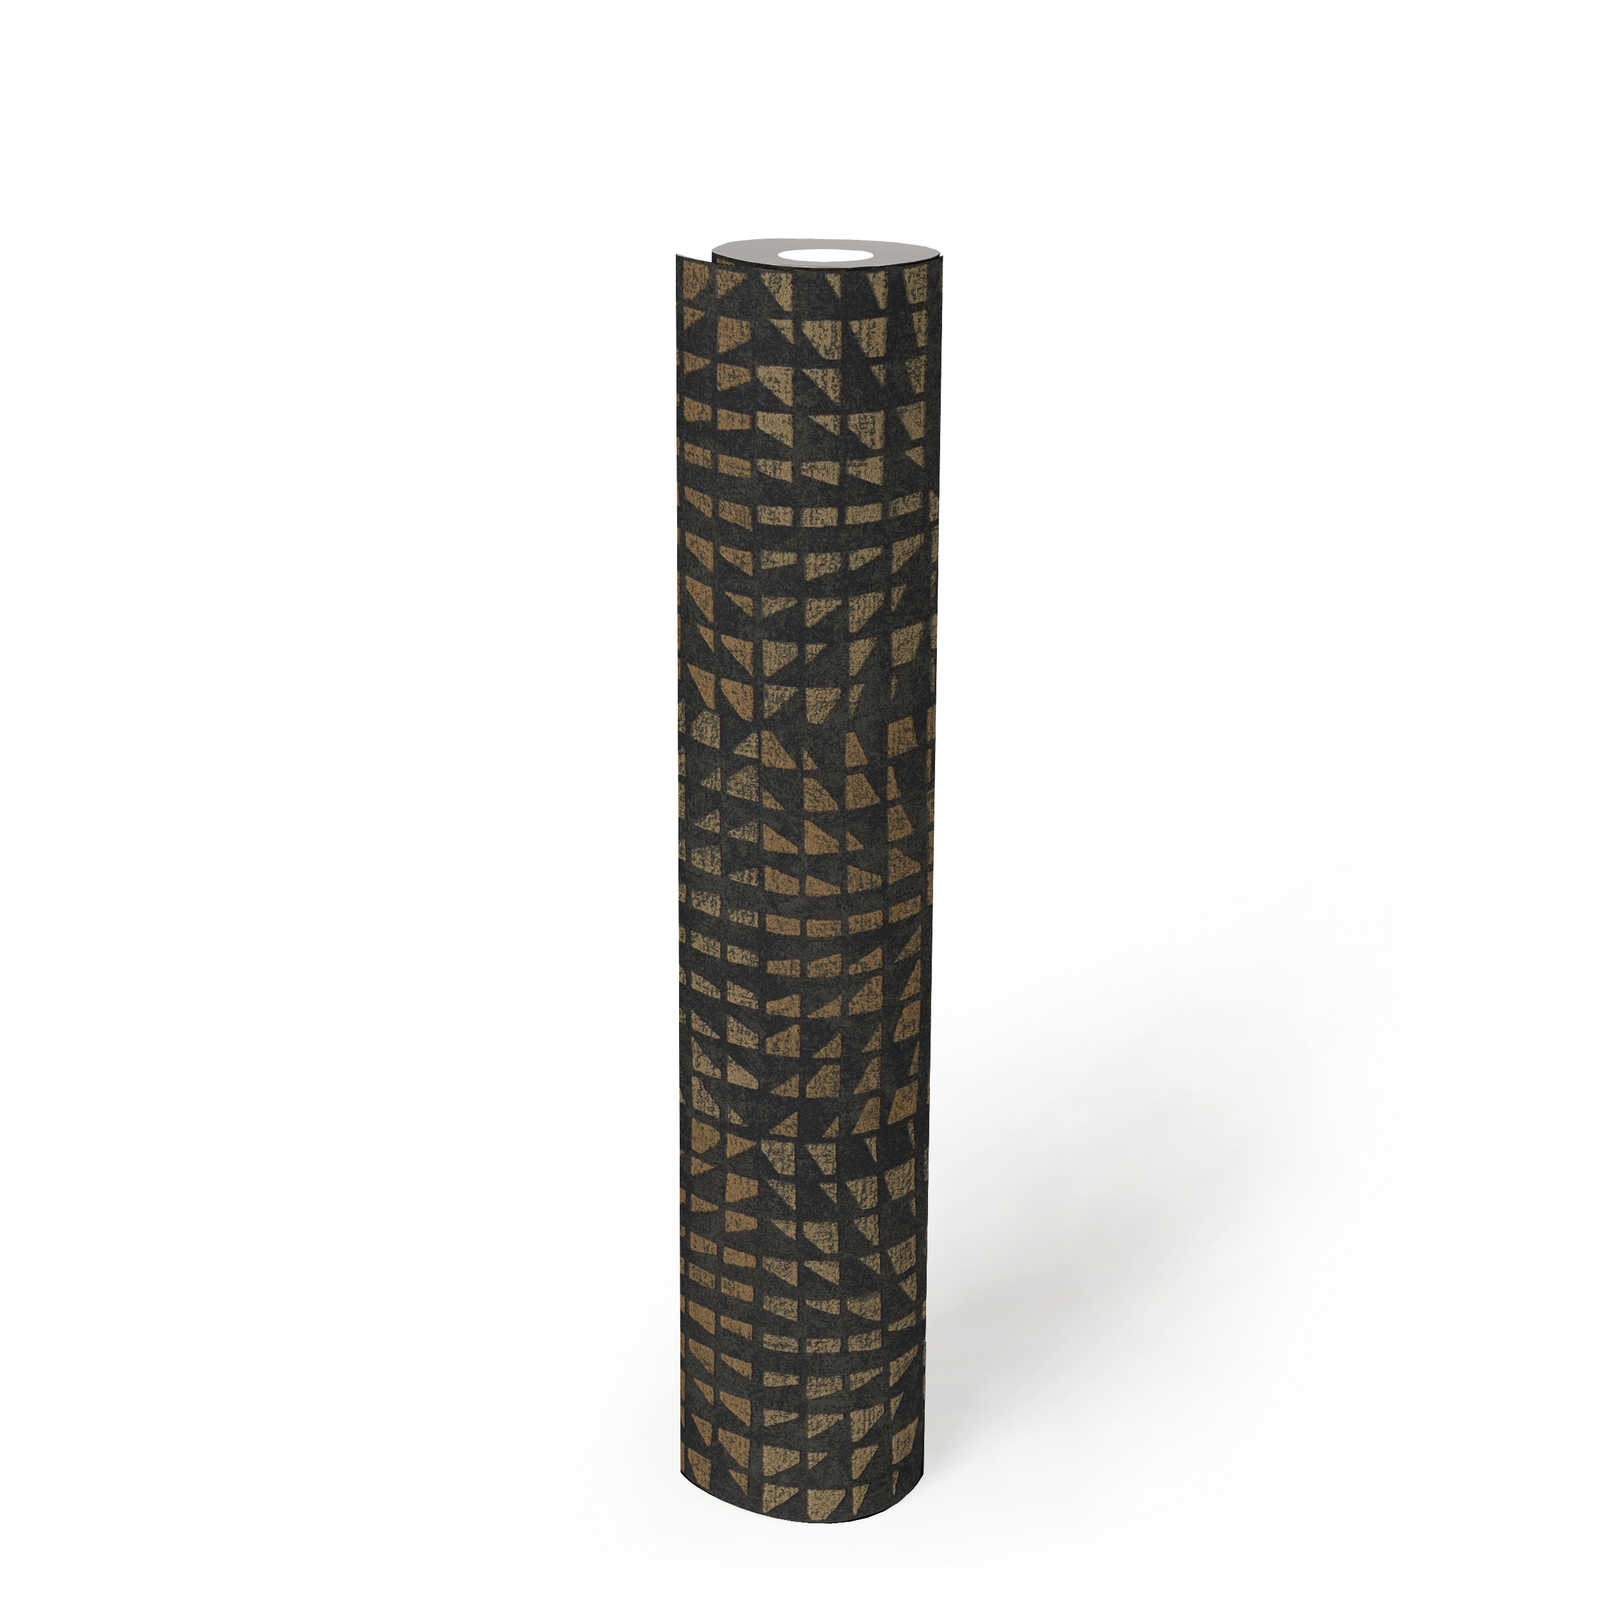             Ethno behang met structuurpatroon & mozaïekeffect - zwart
        